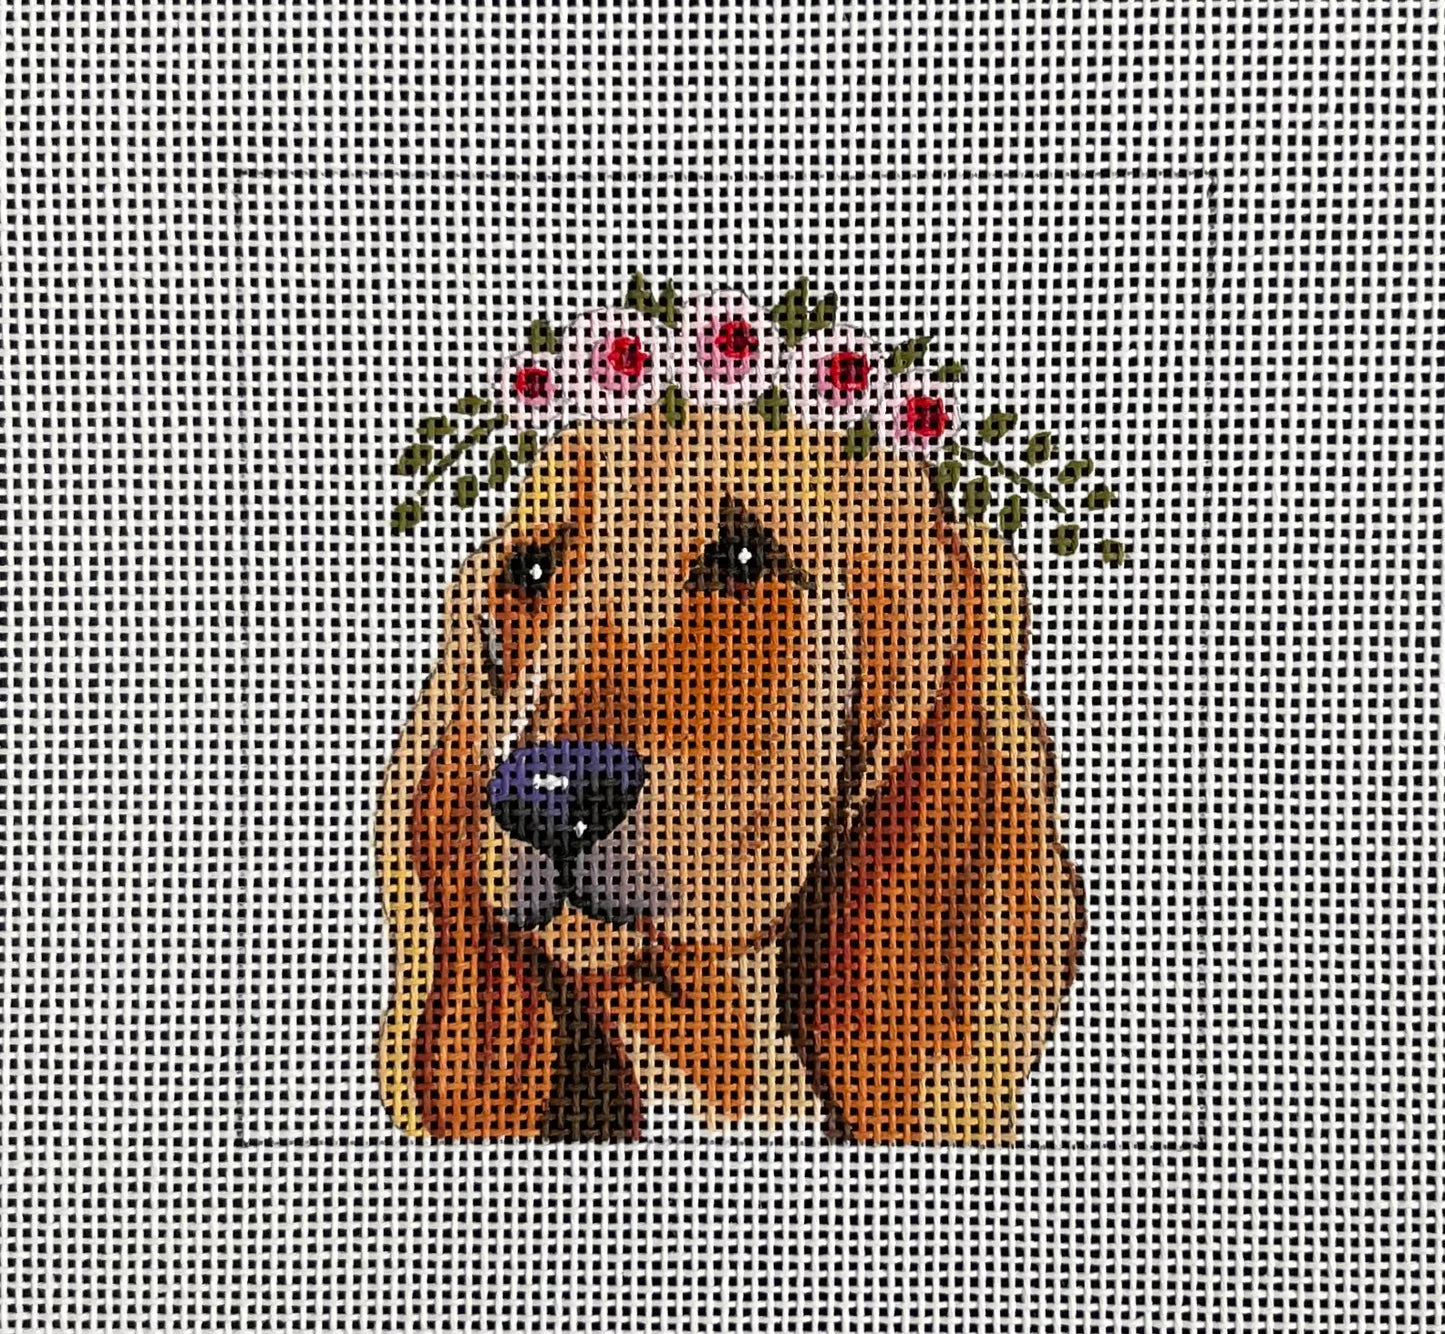 Bloodhound w floral crown insert COP - IN091